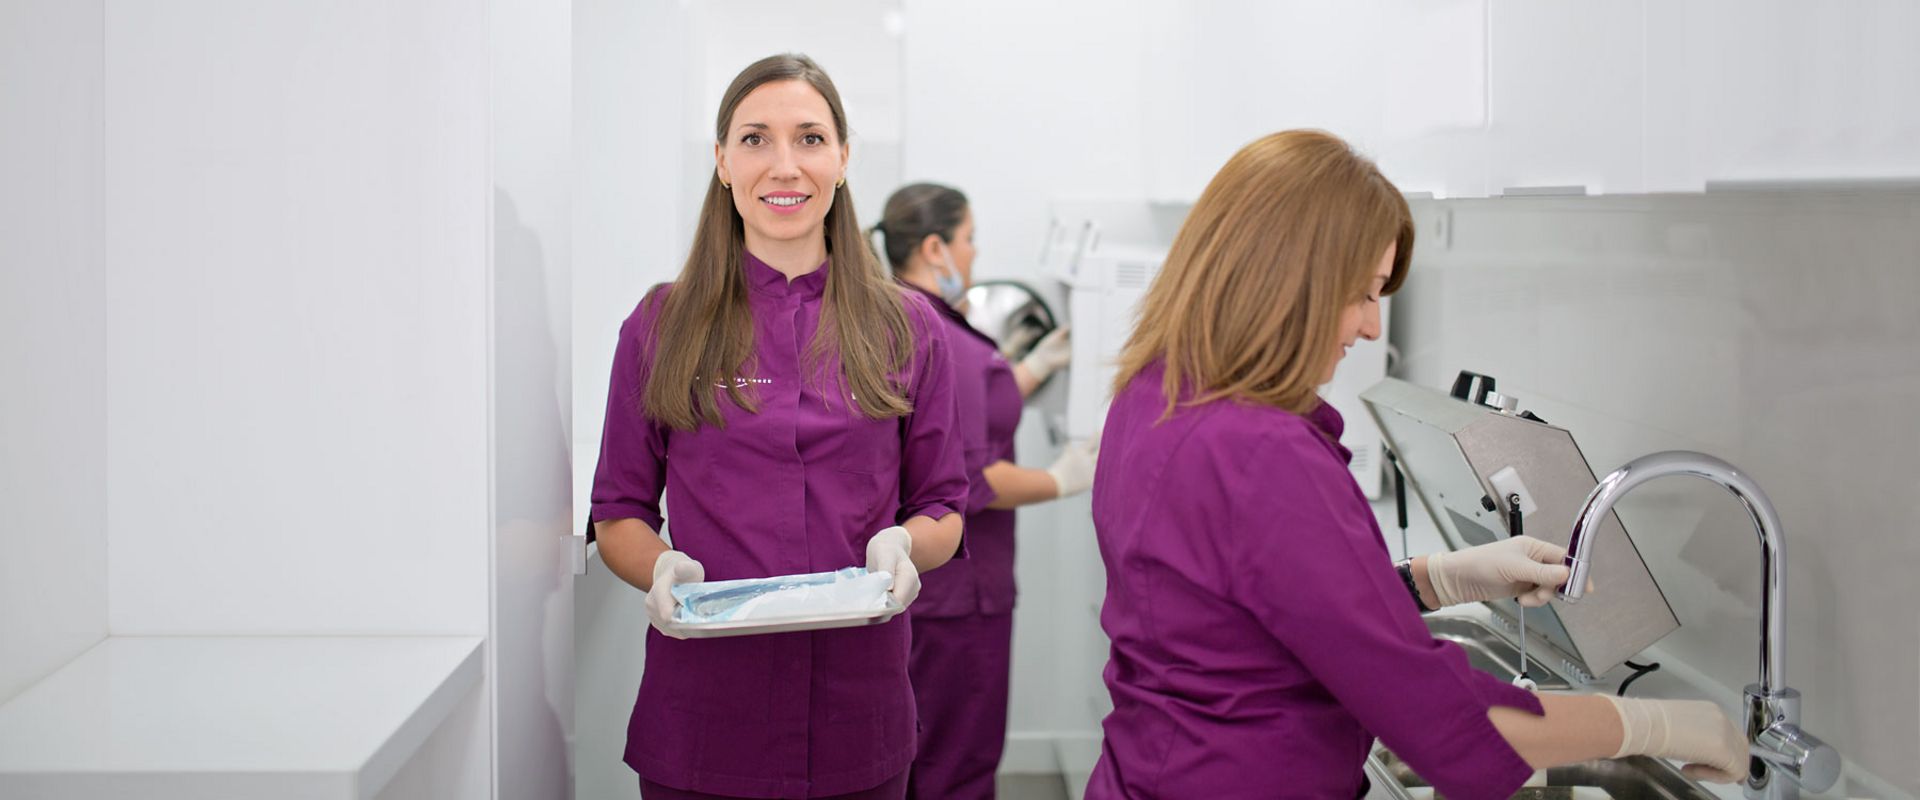 Assistantes cabinet orthodontie Saint Georges Paris en salle de stérilisation